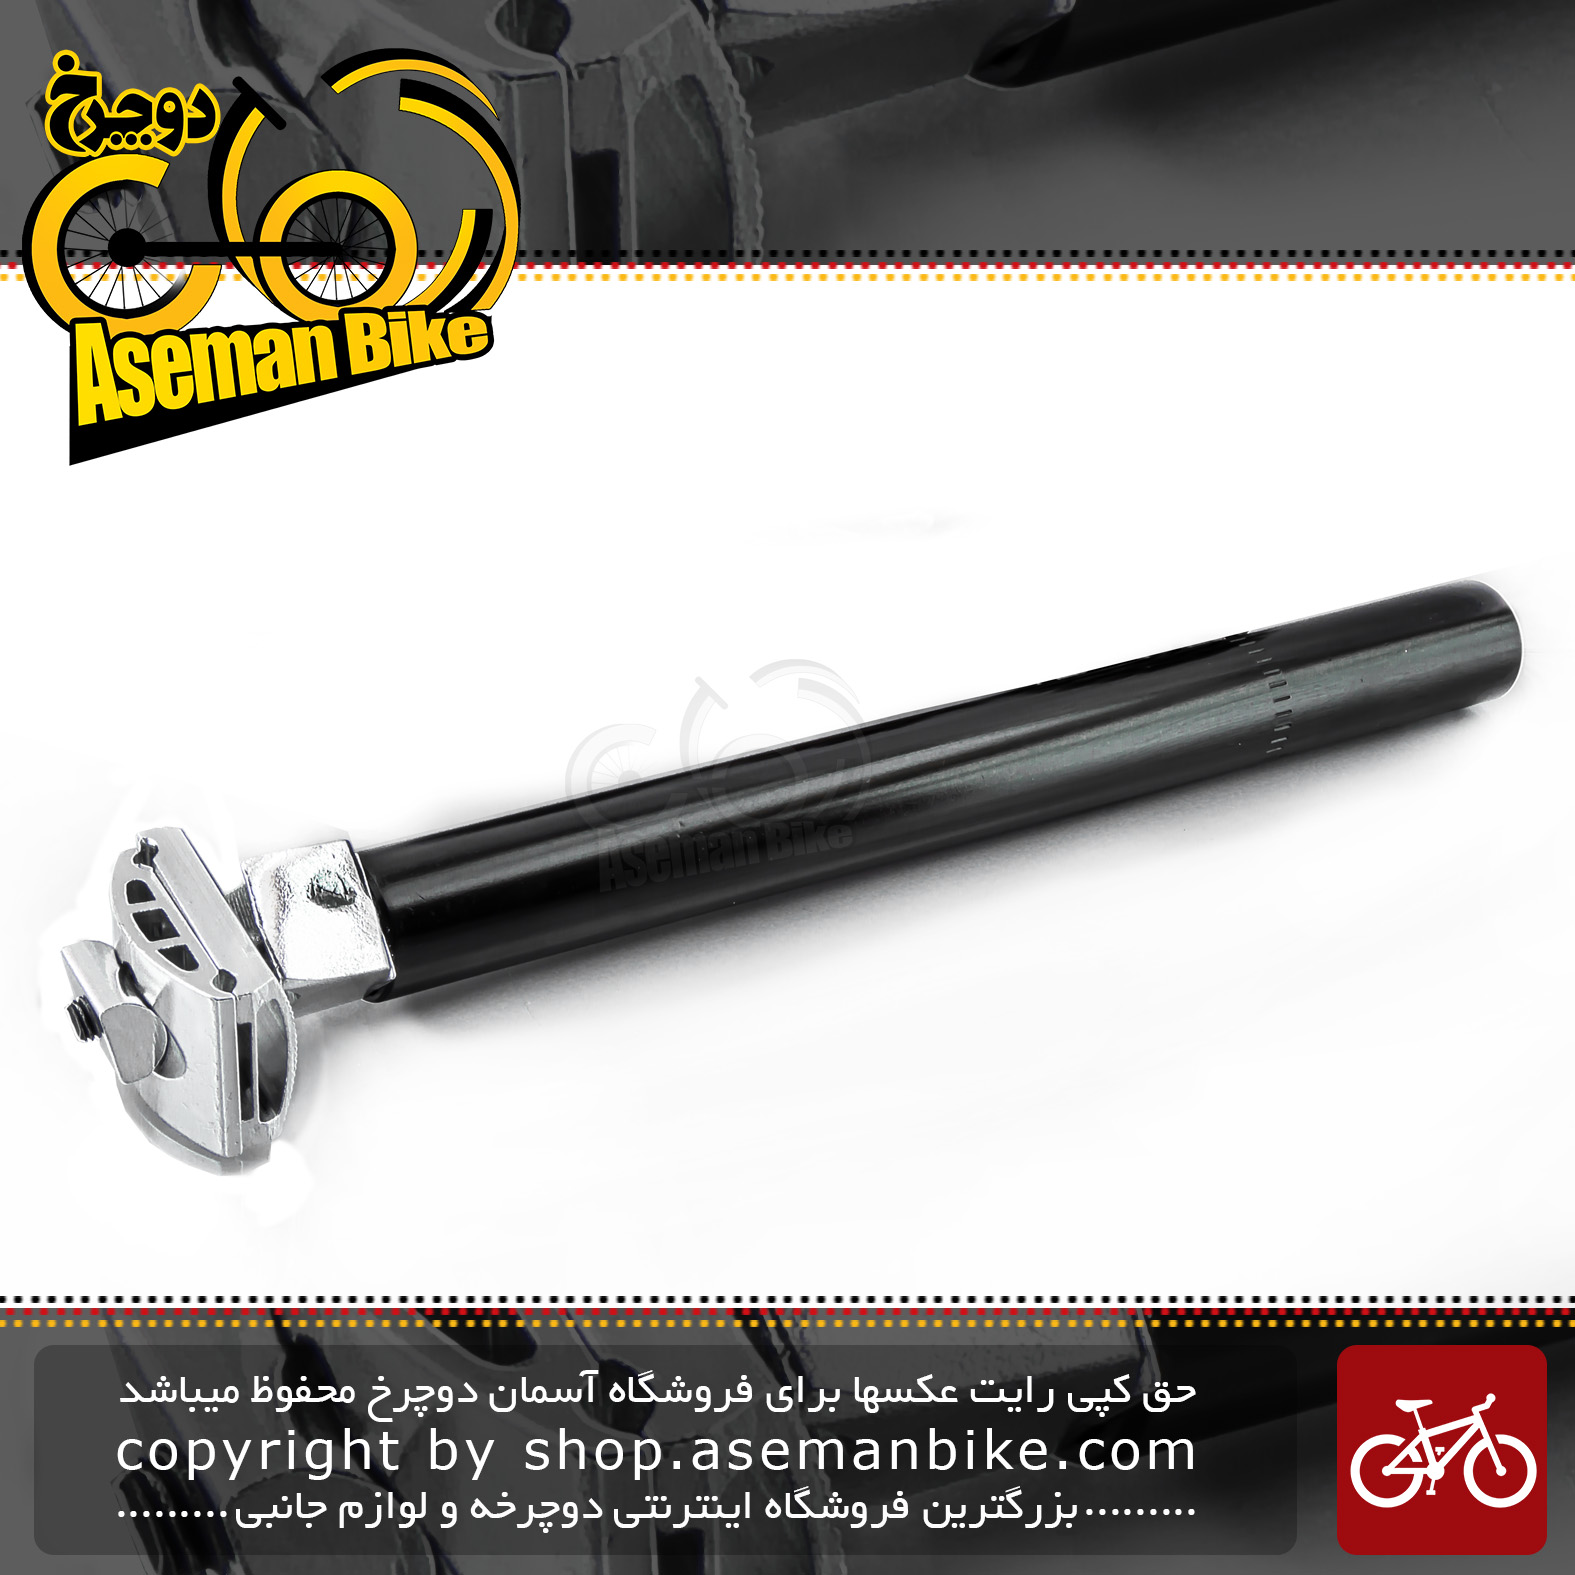 لوله زین دوچرخه اچ ایکس قطر 27.2 میلیمتر طول 300 میلیمتر HX Bicycle Seat-Post 27.2 mm  Diameter, 300 mm Length